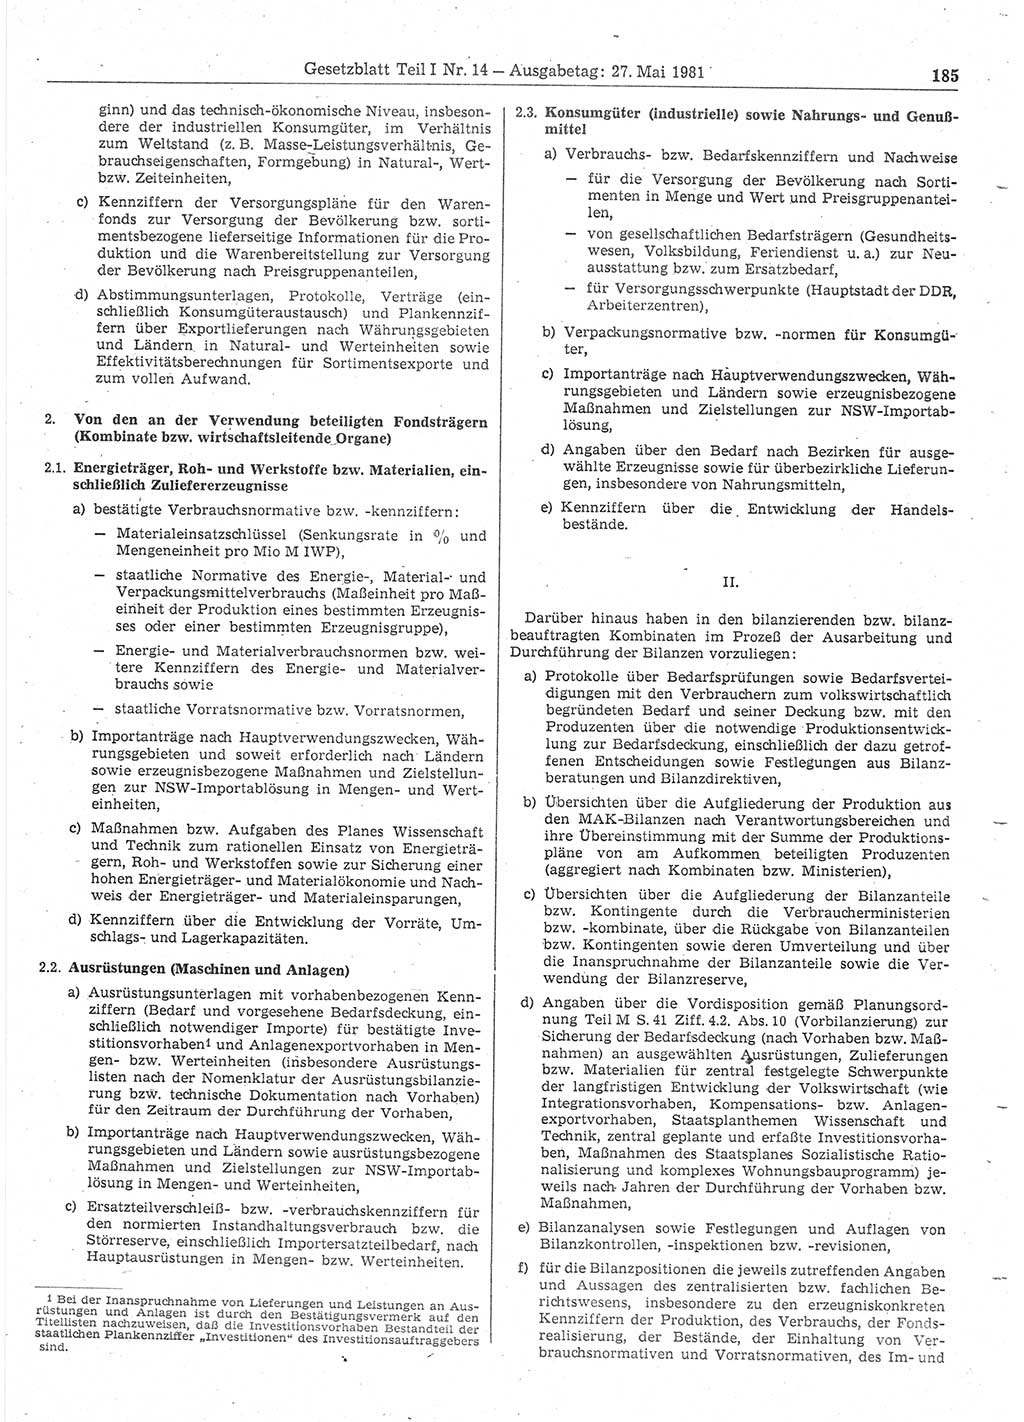 Gesetzblatt (GBl.) der Deutschen Demokratischen Republik (DDR) Teil Ⅰ 1981, Seite 185 (GBl. DDR Ⅰ 1981, S. 185)